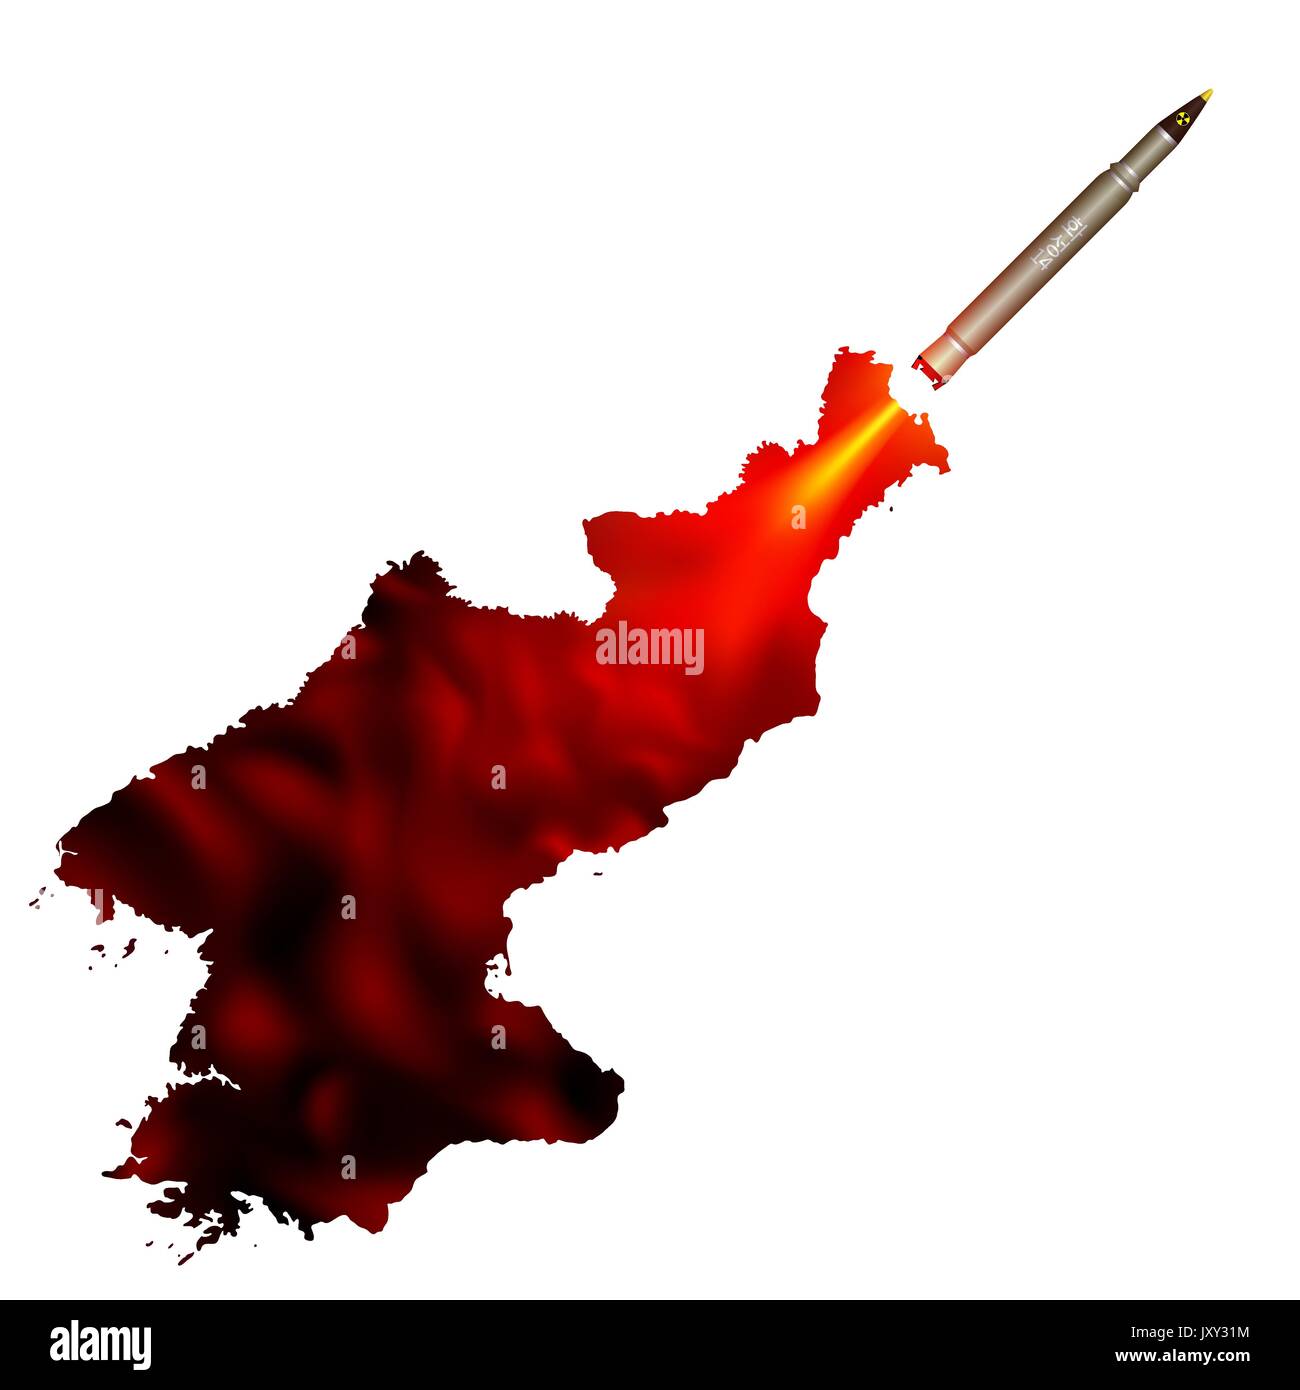 Il lancio di un proiettile di missili nucleari. Sentiero di fumo richiama la forma di un nord coreano mappa. Arte politica contro una provocazione di atomic Guerra Mondiale. Illustrazione Vettoriale